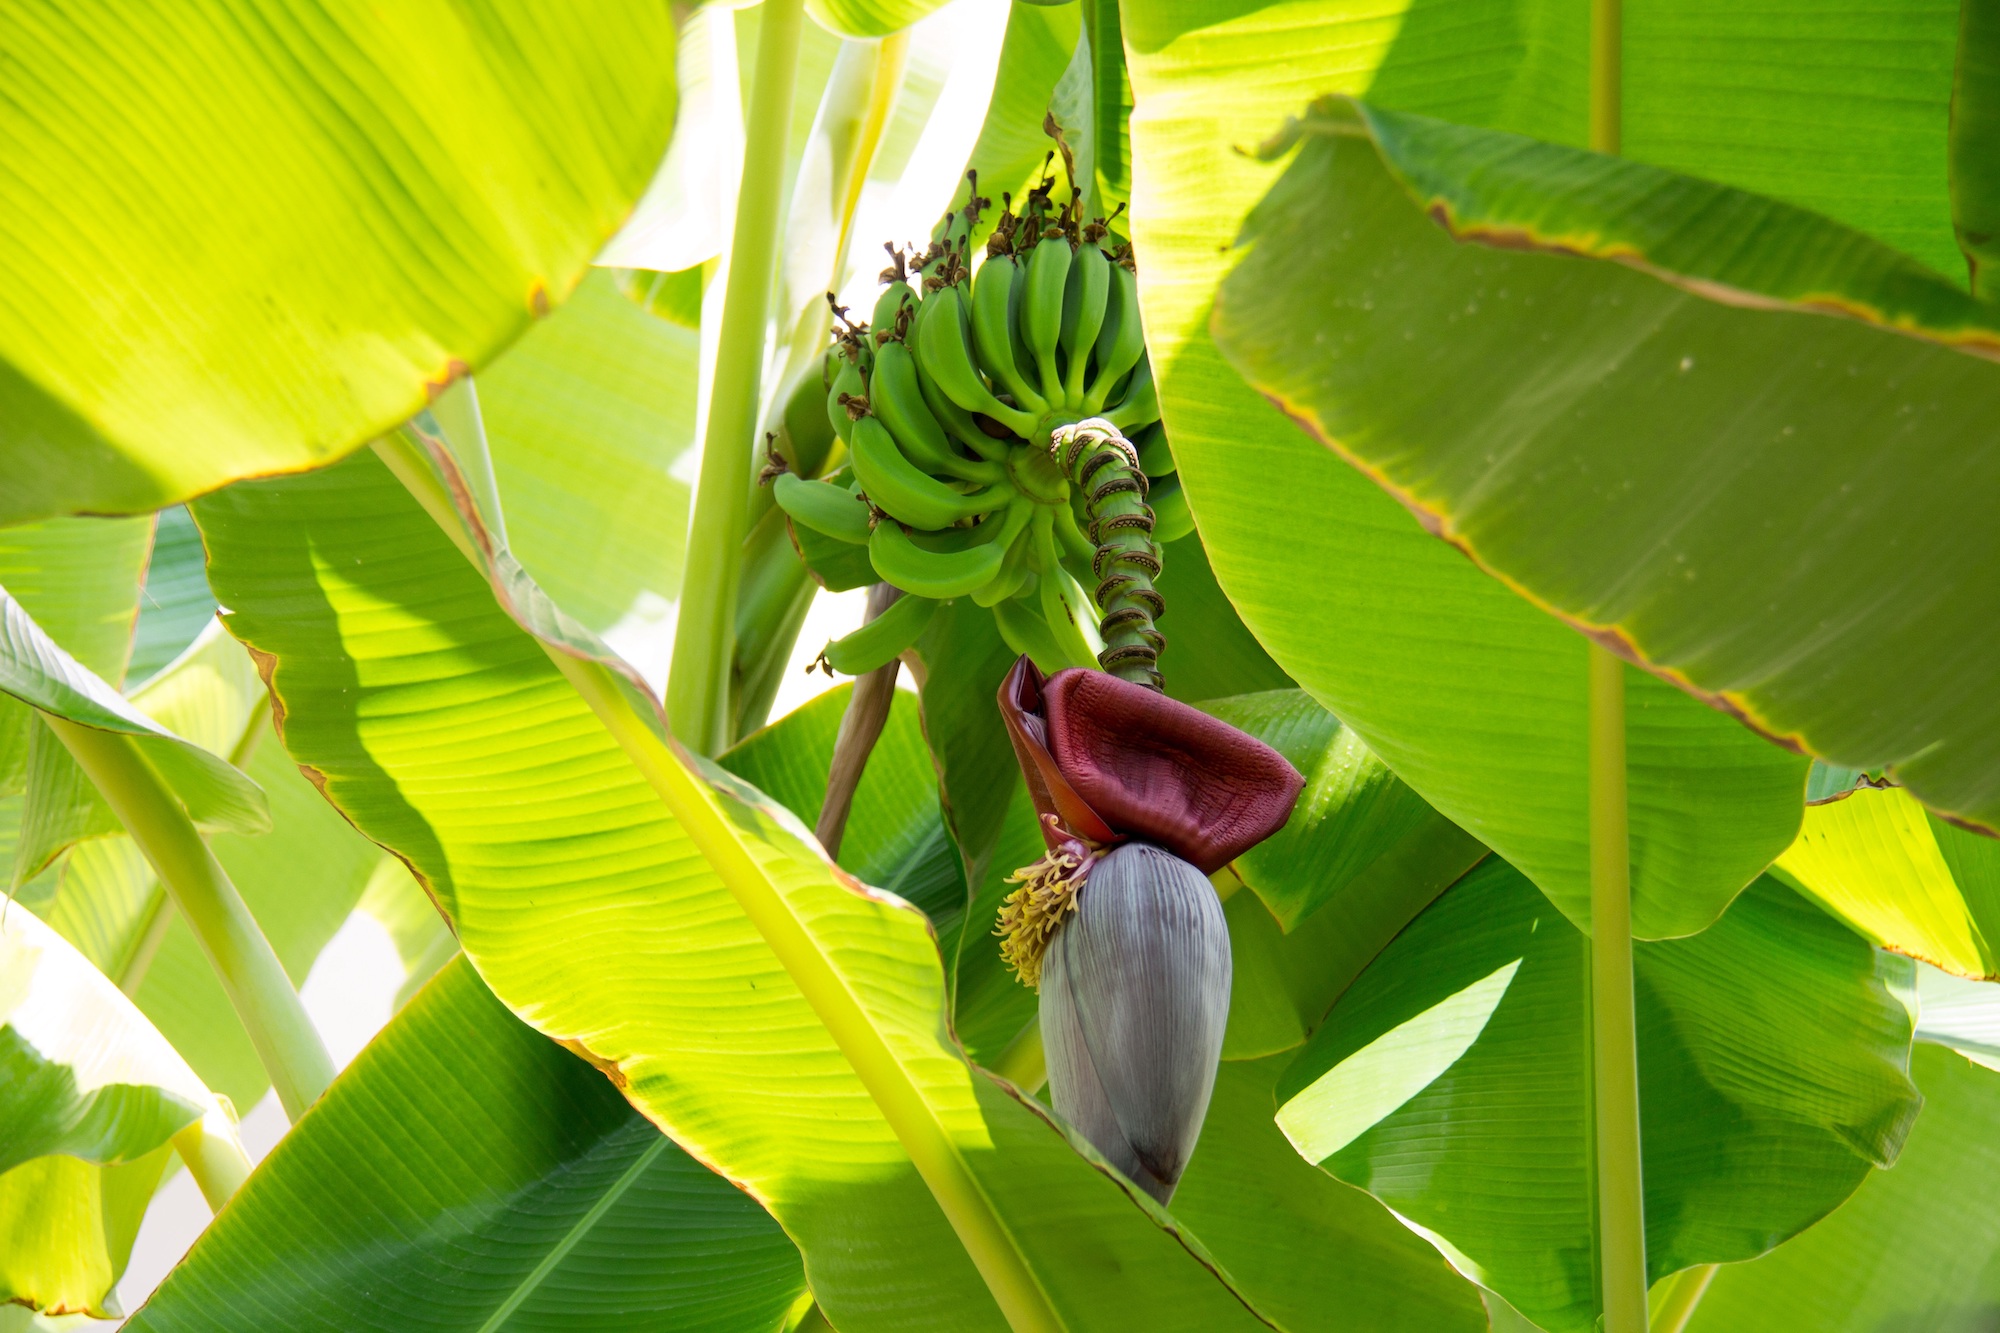 Banana tree blooming